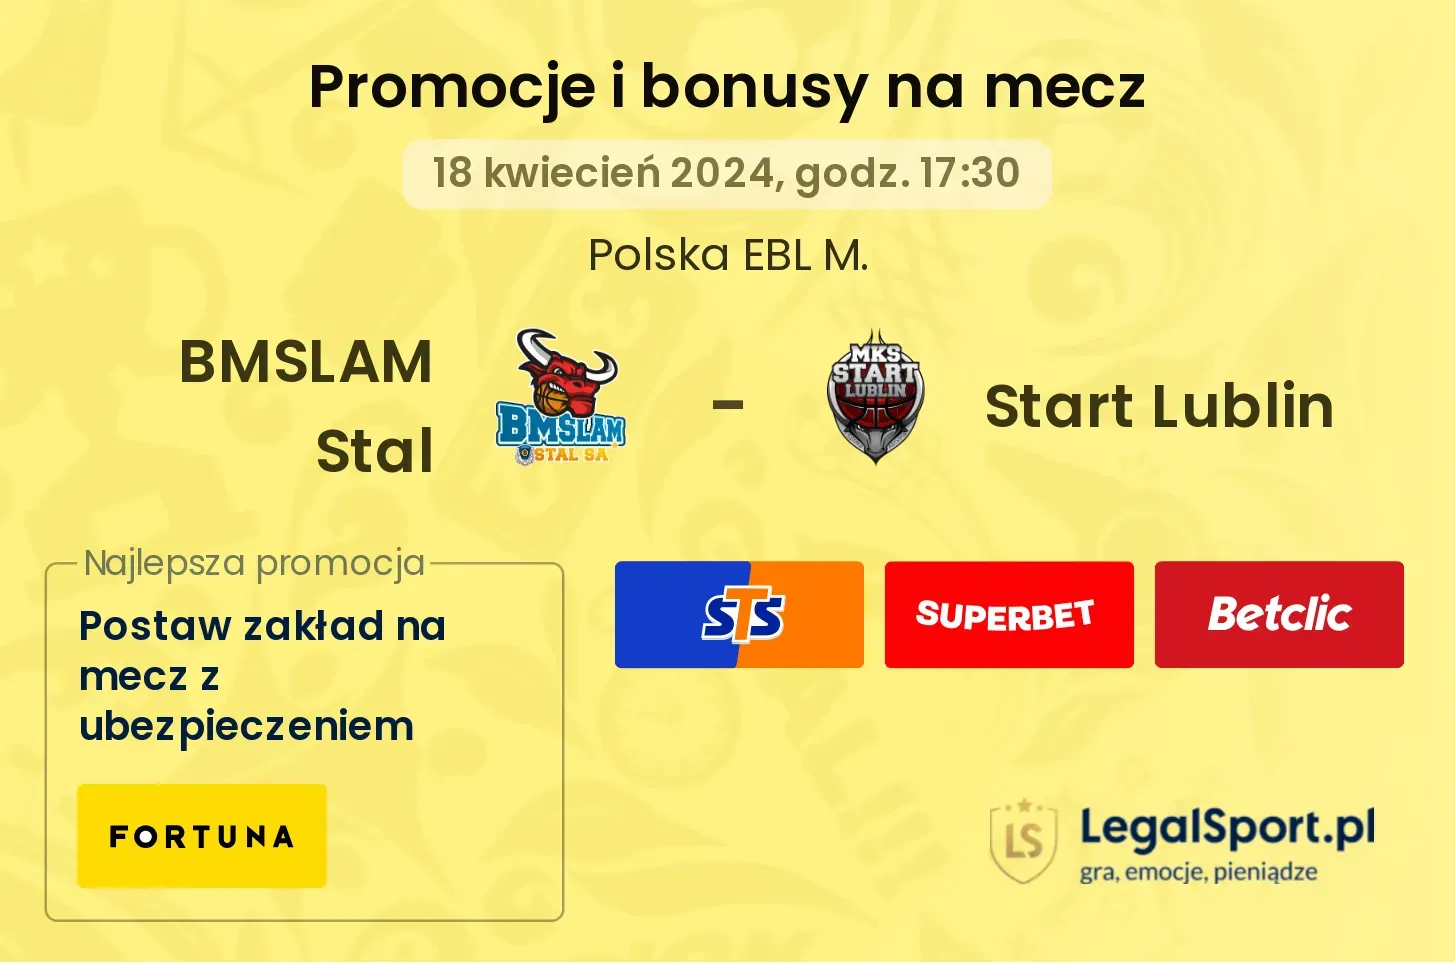 BMSLAM Stal - Start Lublin promocje bonusy na mecz